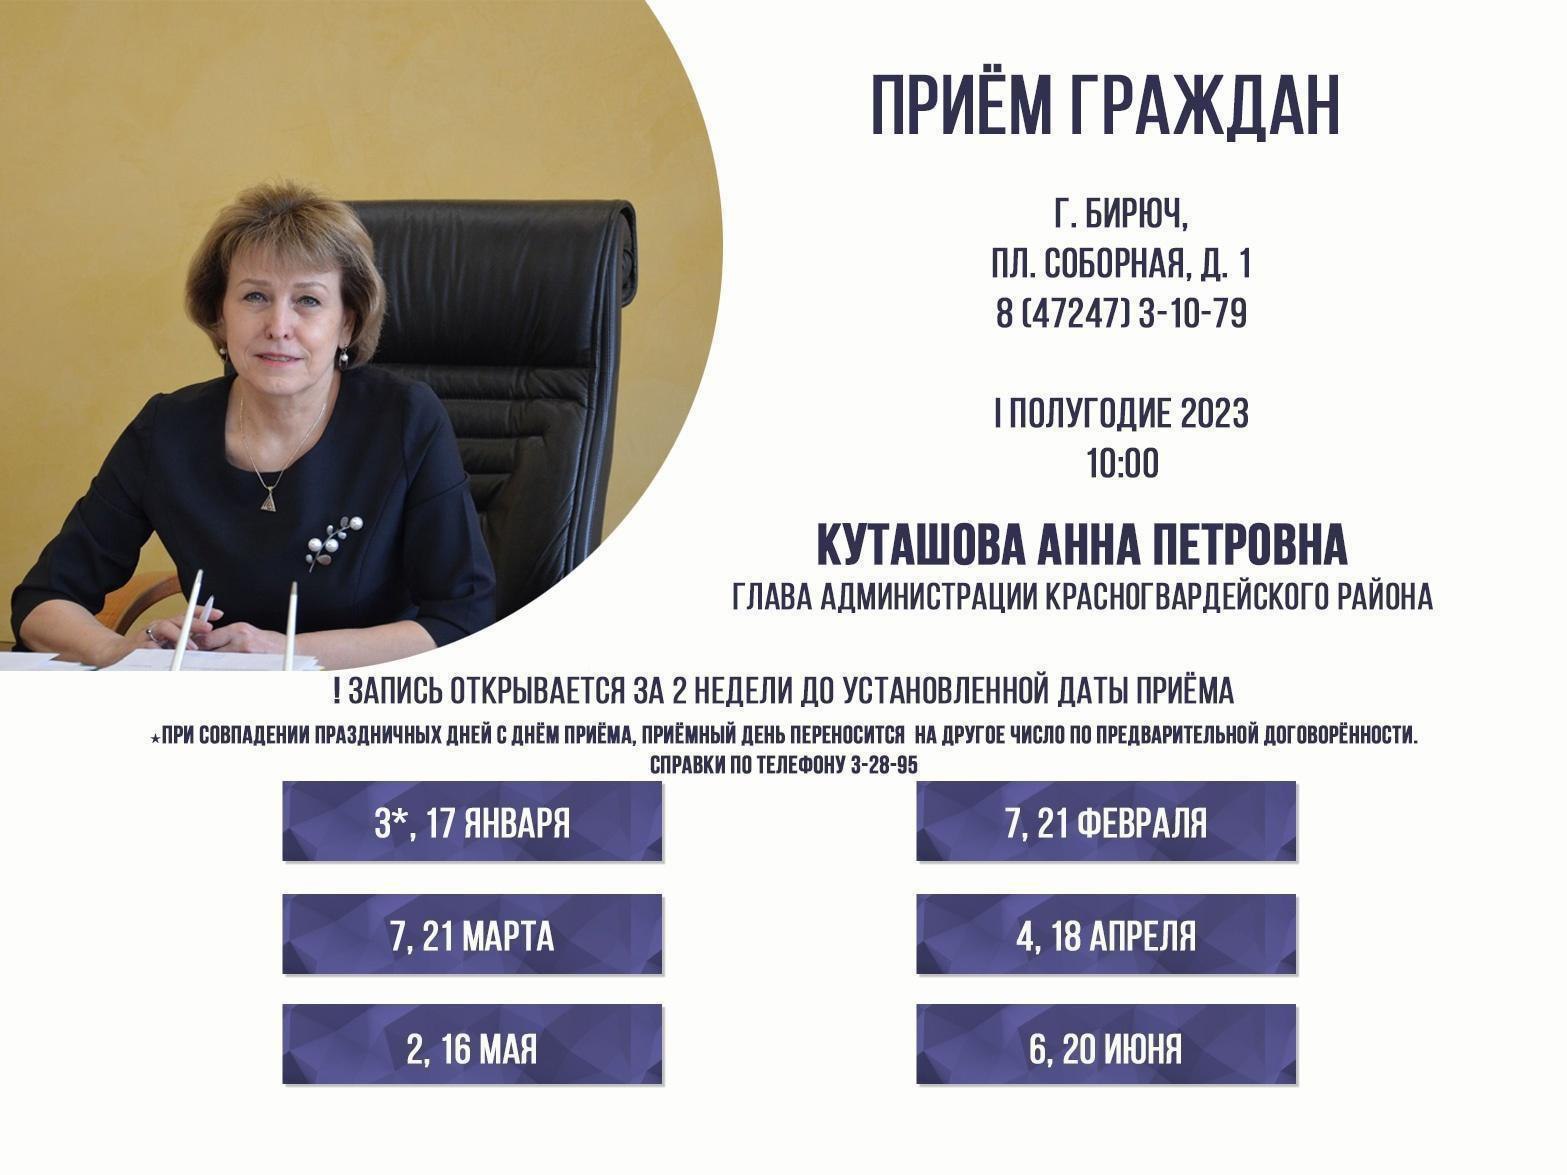 21 марта в 10:00 состоится личный приём граждан главой администрации района Анной Куташовой